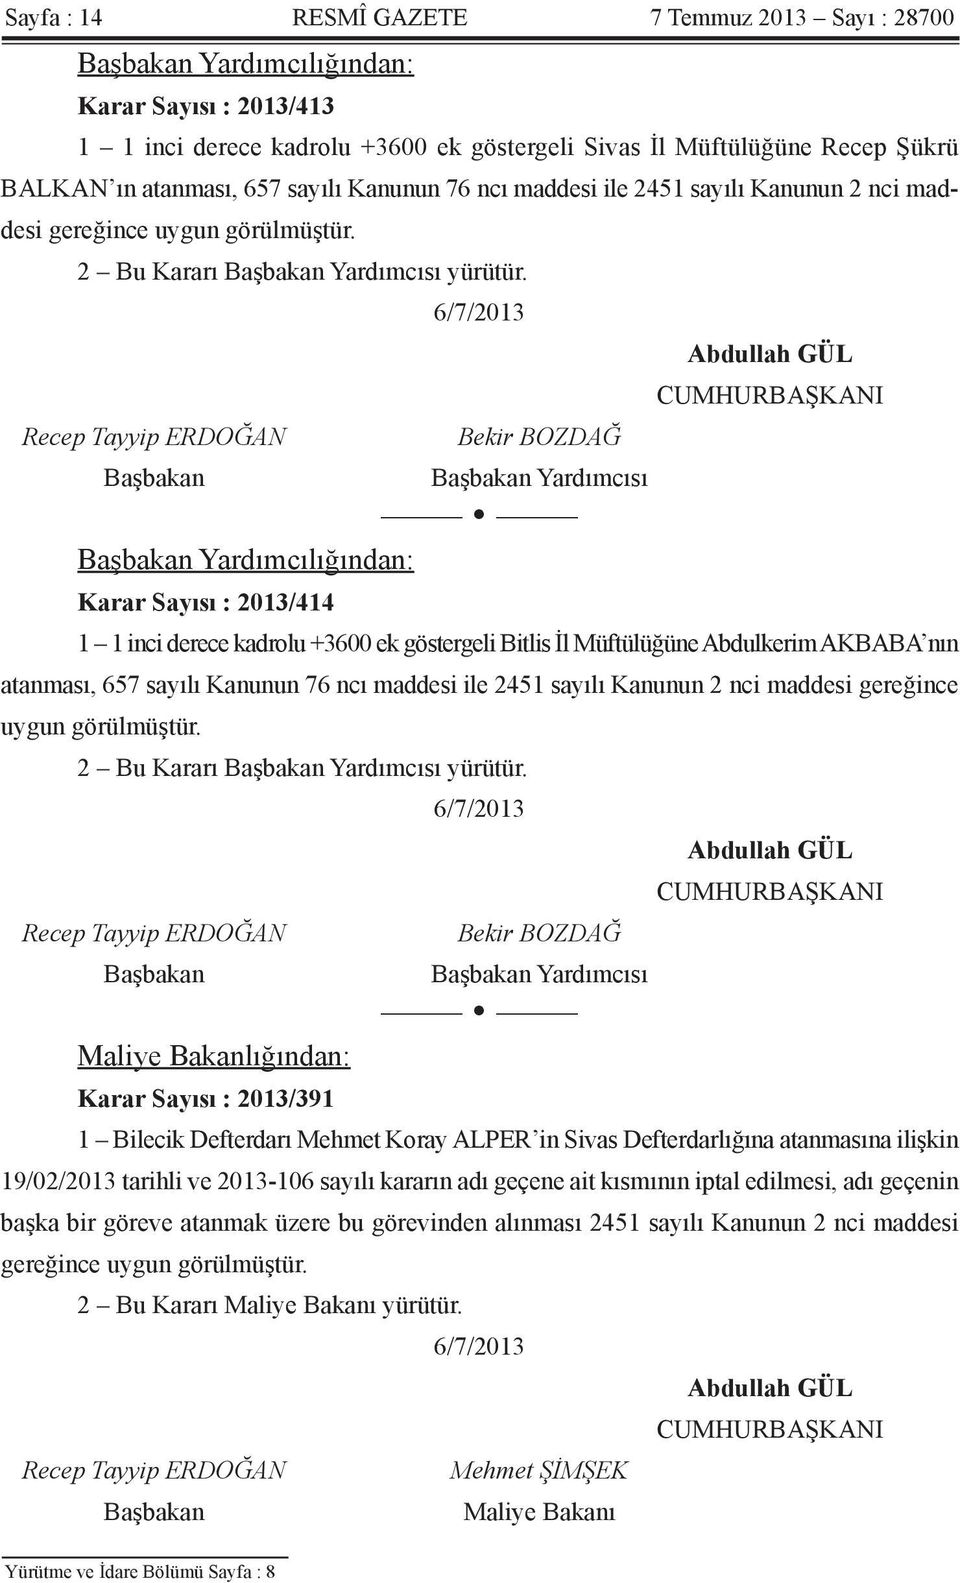 Yardımcısı Yardımcılığından: Karar Sayısı : 2013/414 1 1 inci derece kadrolu +3600 ek göstergeli Bitlis İl Müftülüğüne Abdulkerim AKBABA nın atanması, 657  Yardımcısı Maliye Bakanlığından: Karar